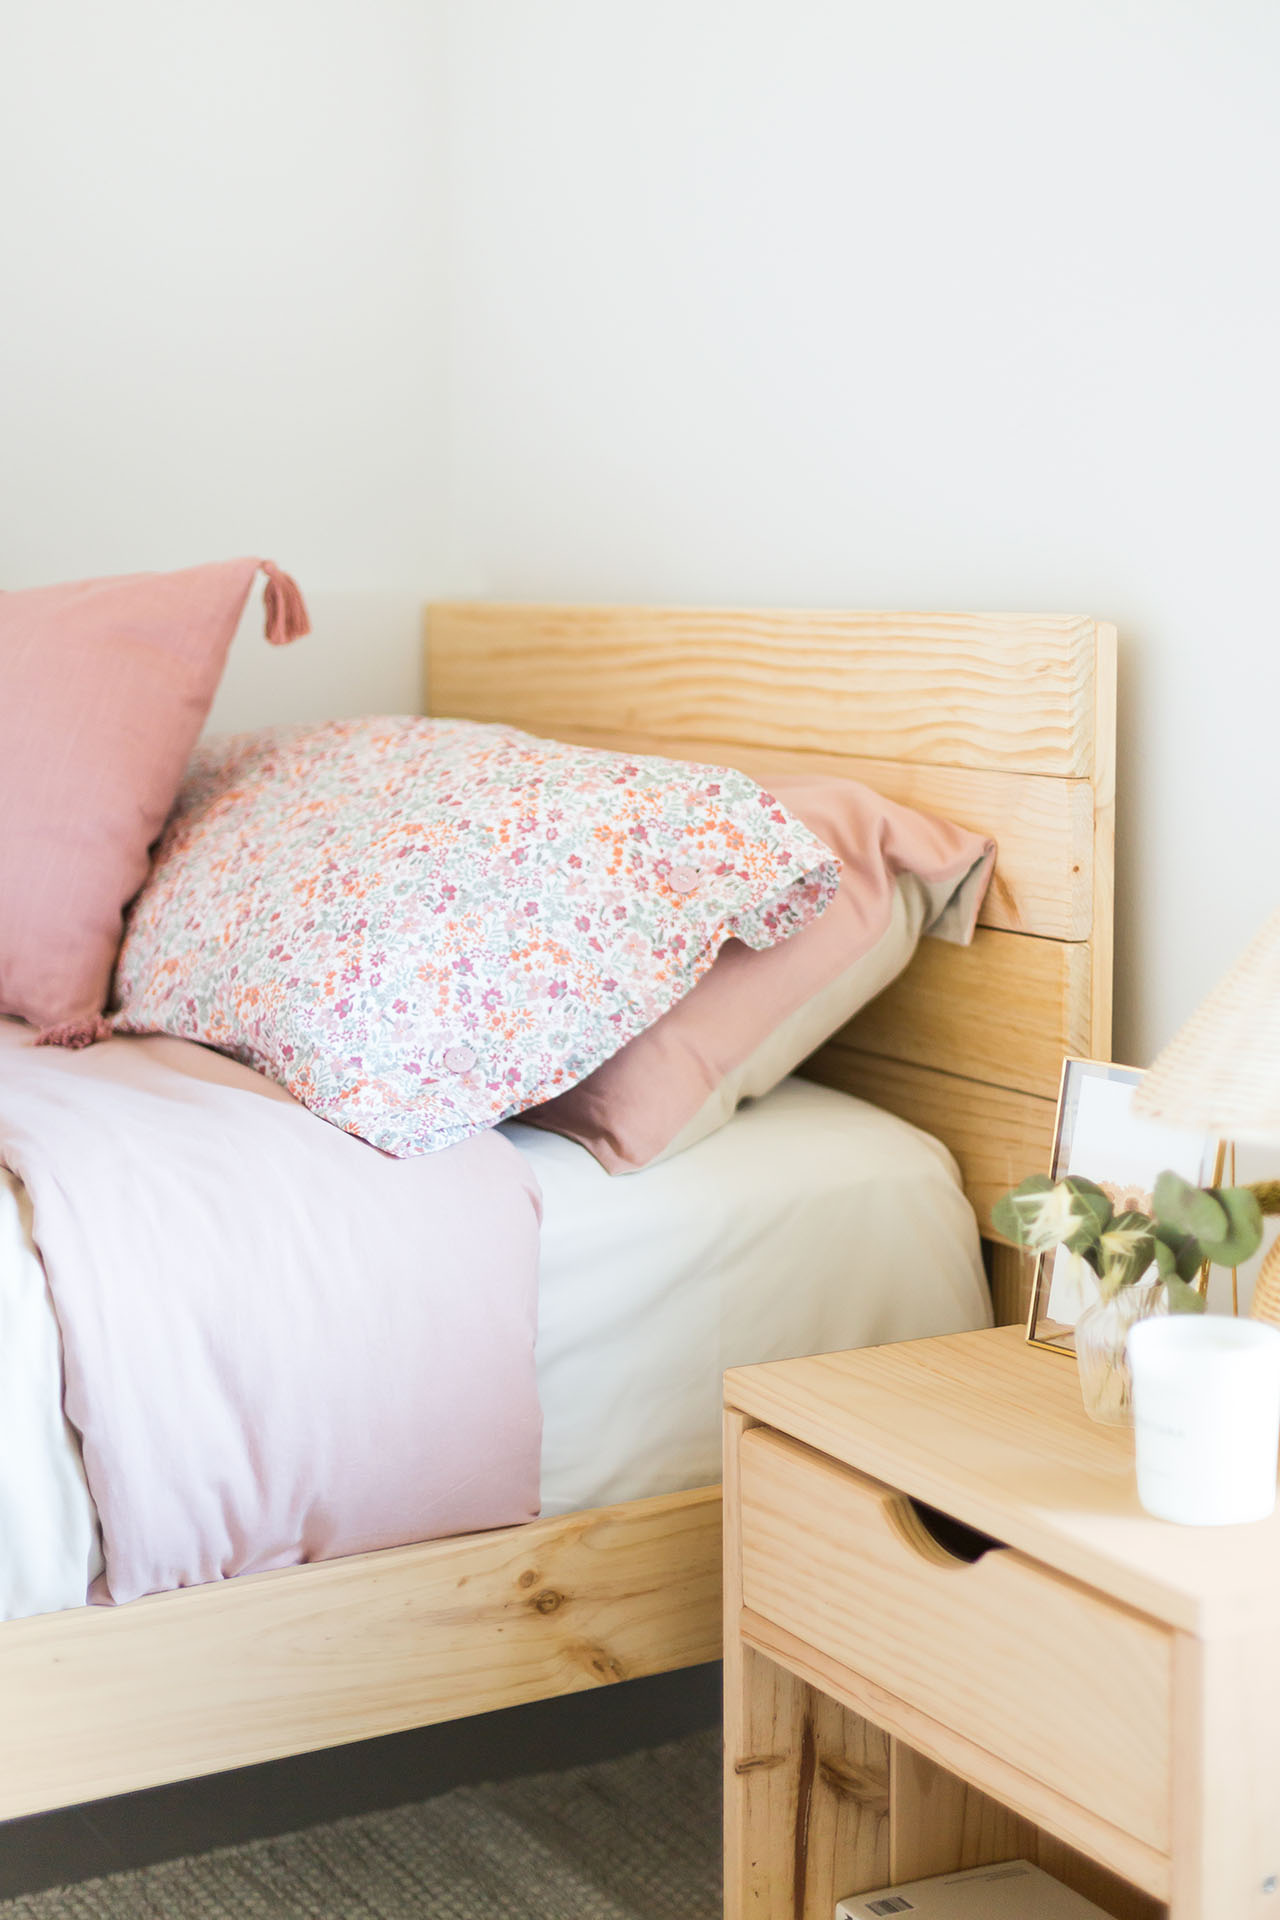 Cabeceros de cama decorativos para tu dormitorio - Foto 1